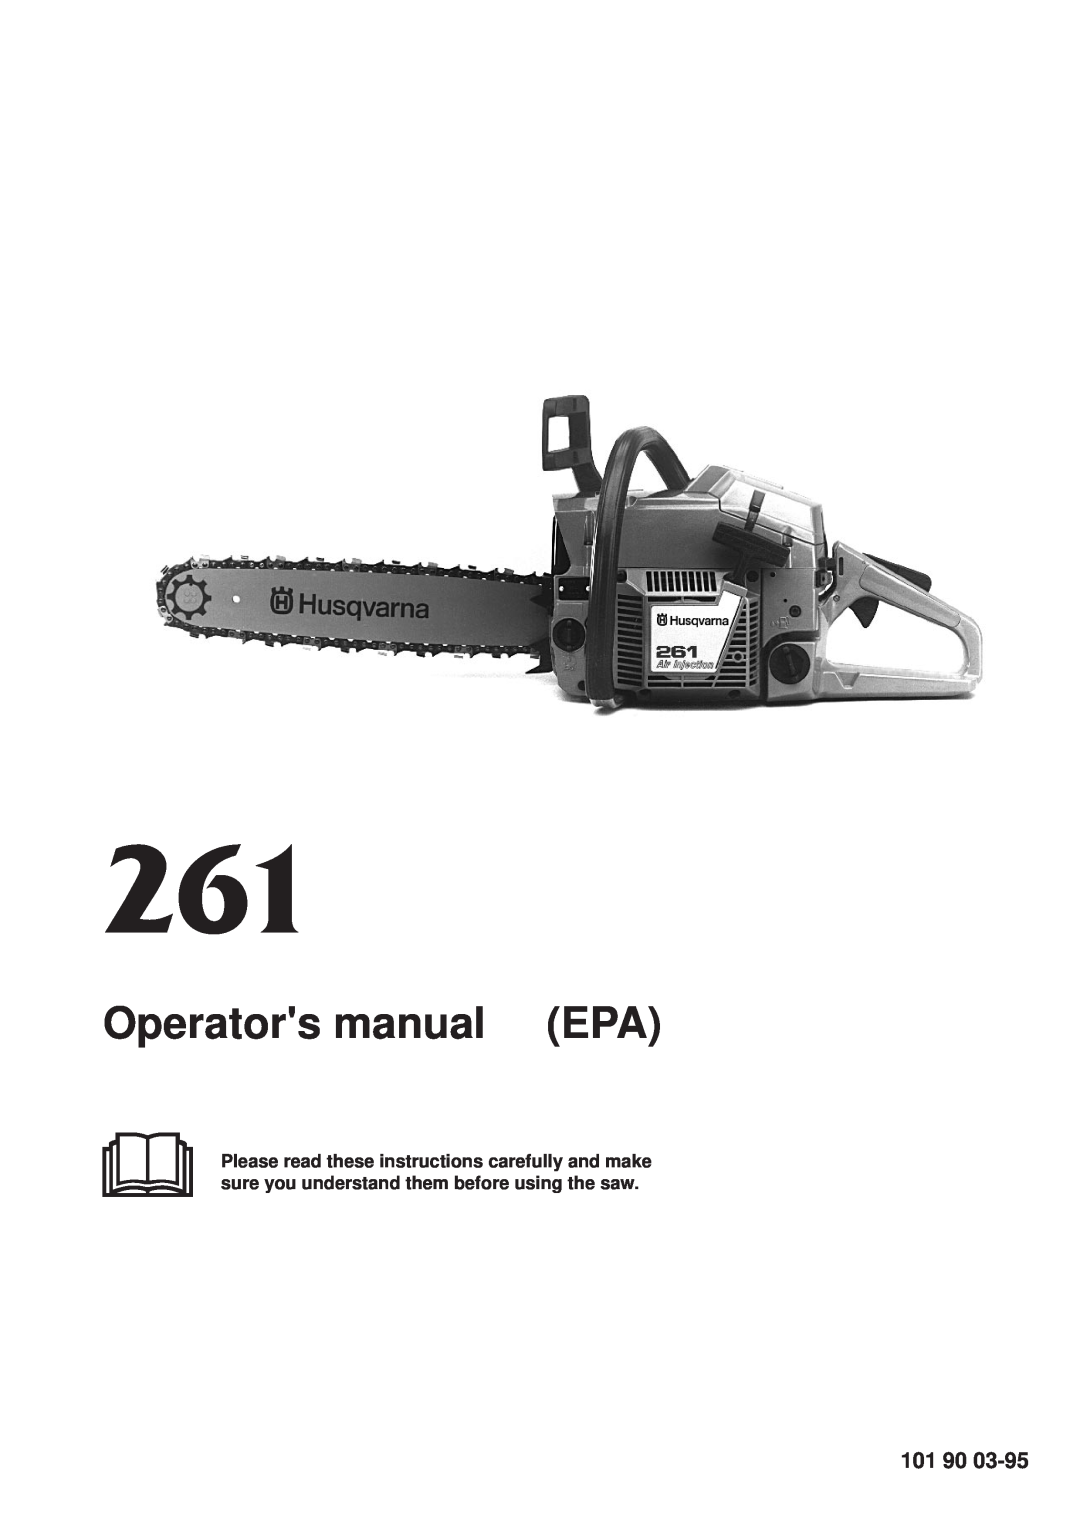 Husqvarna 261 manual Operators manual EPA, 101 